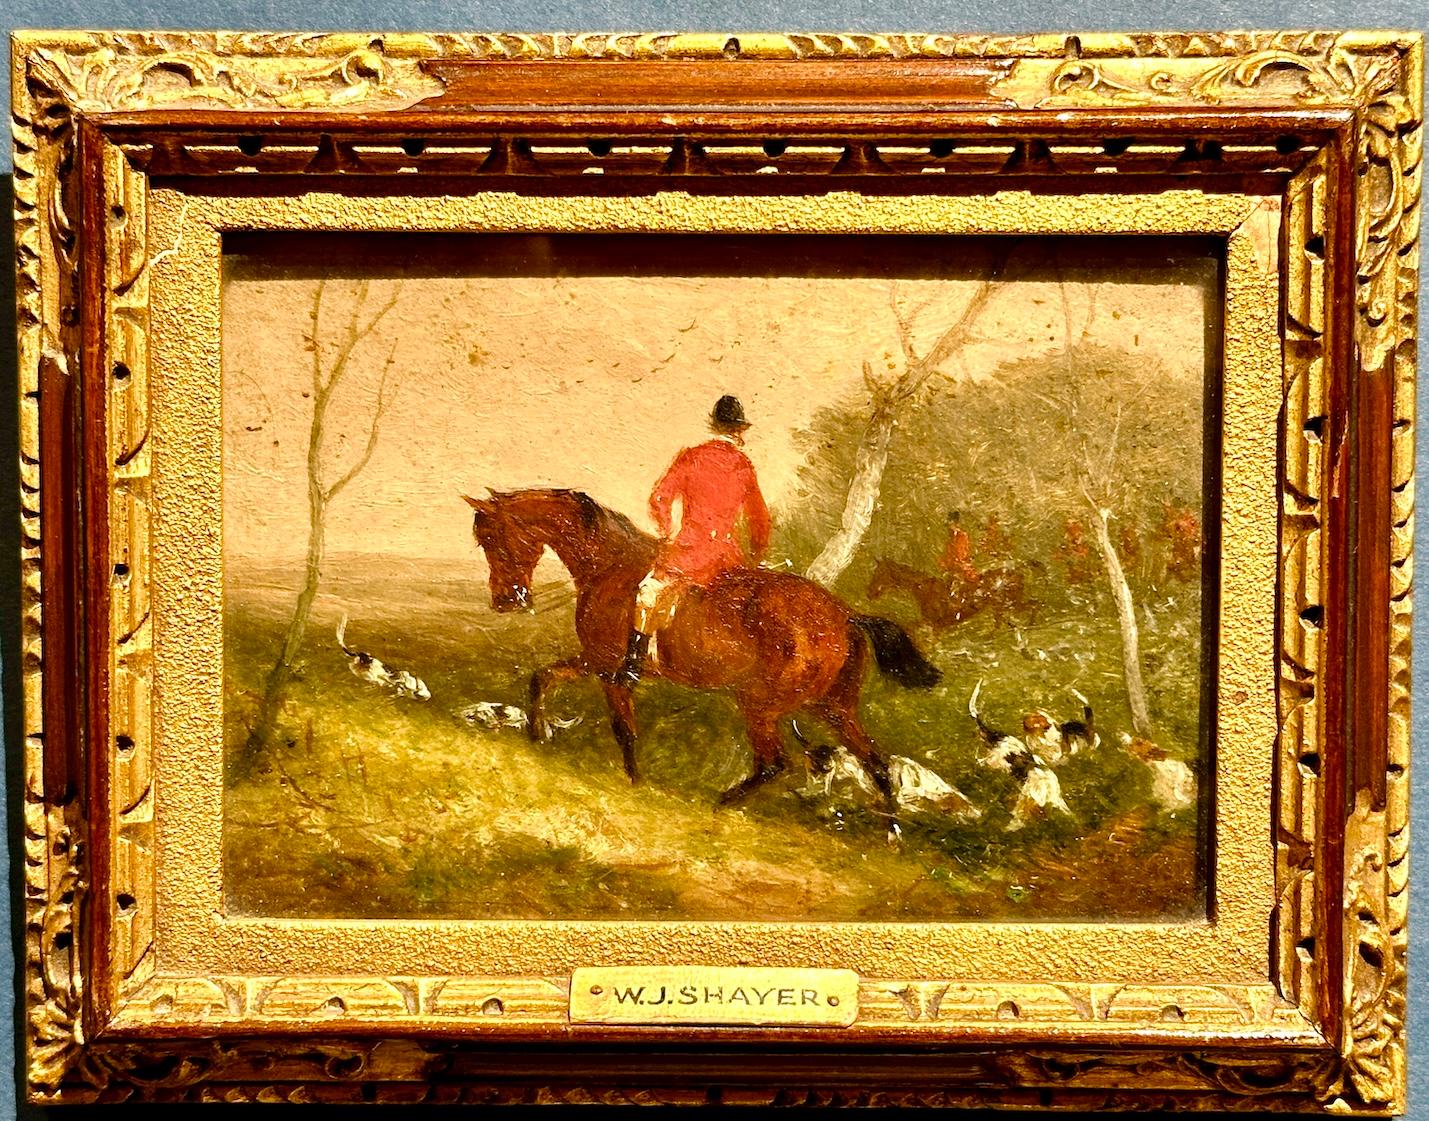 Landscape Painting William Joseph Shayer - chasseur de renard anglais sur son cheval, huile dans un paysage du 19e siècle